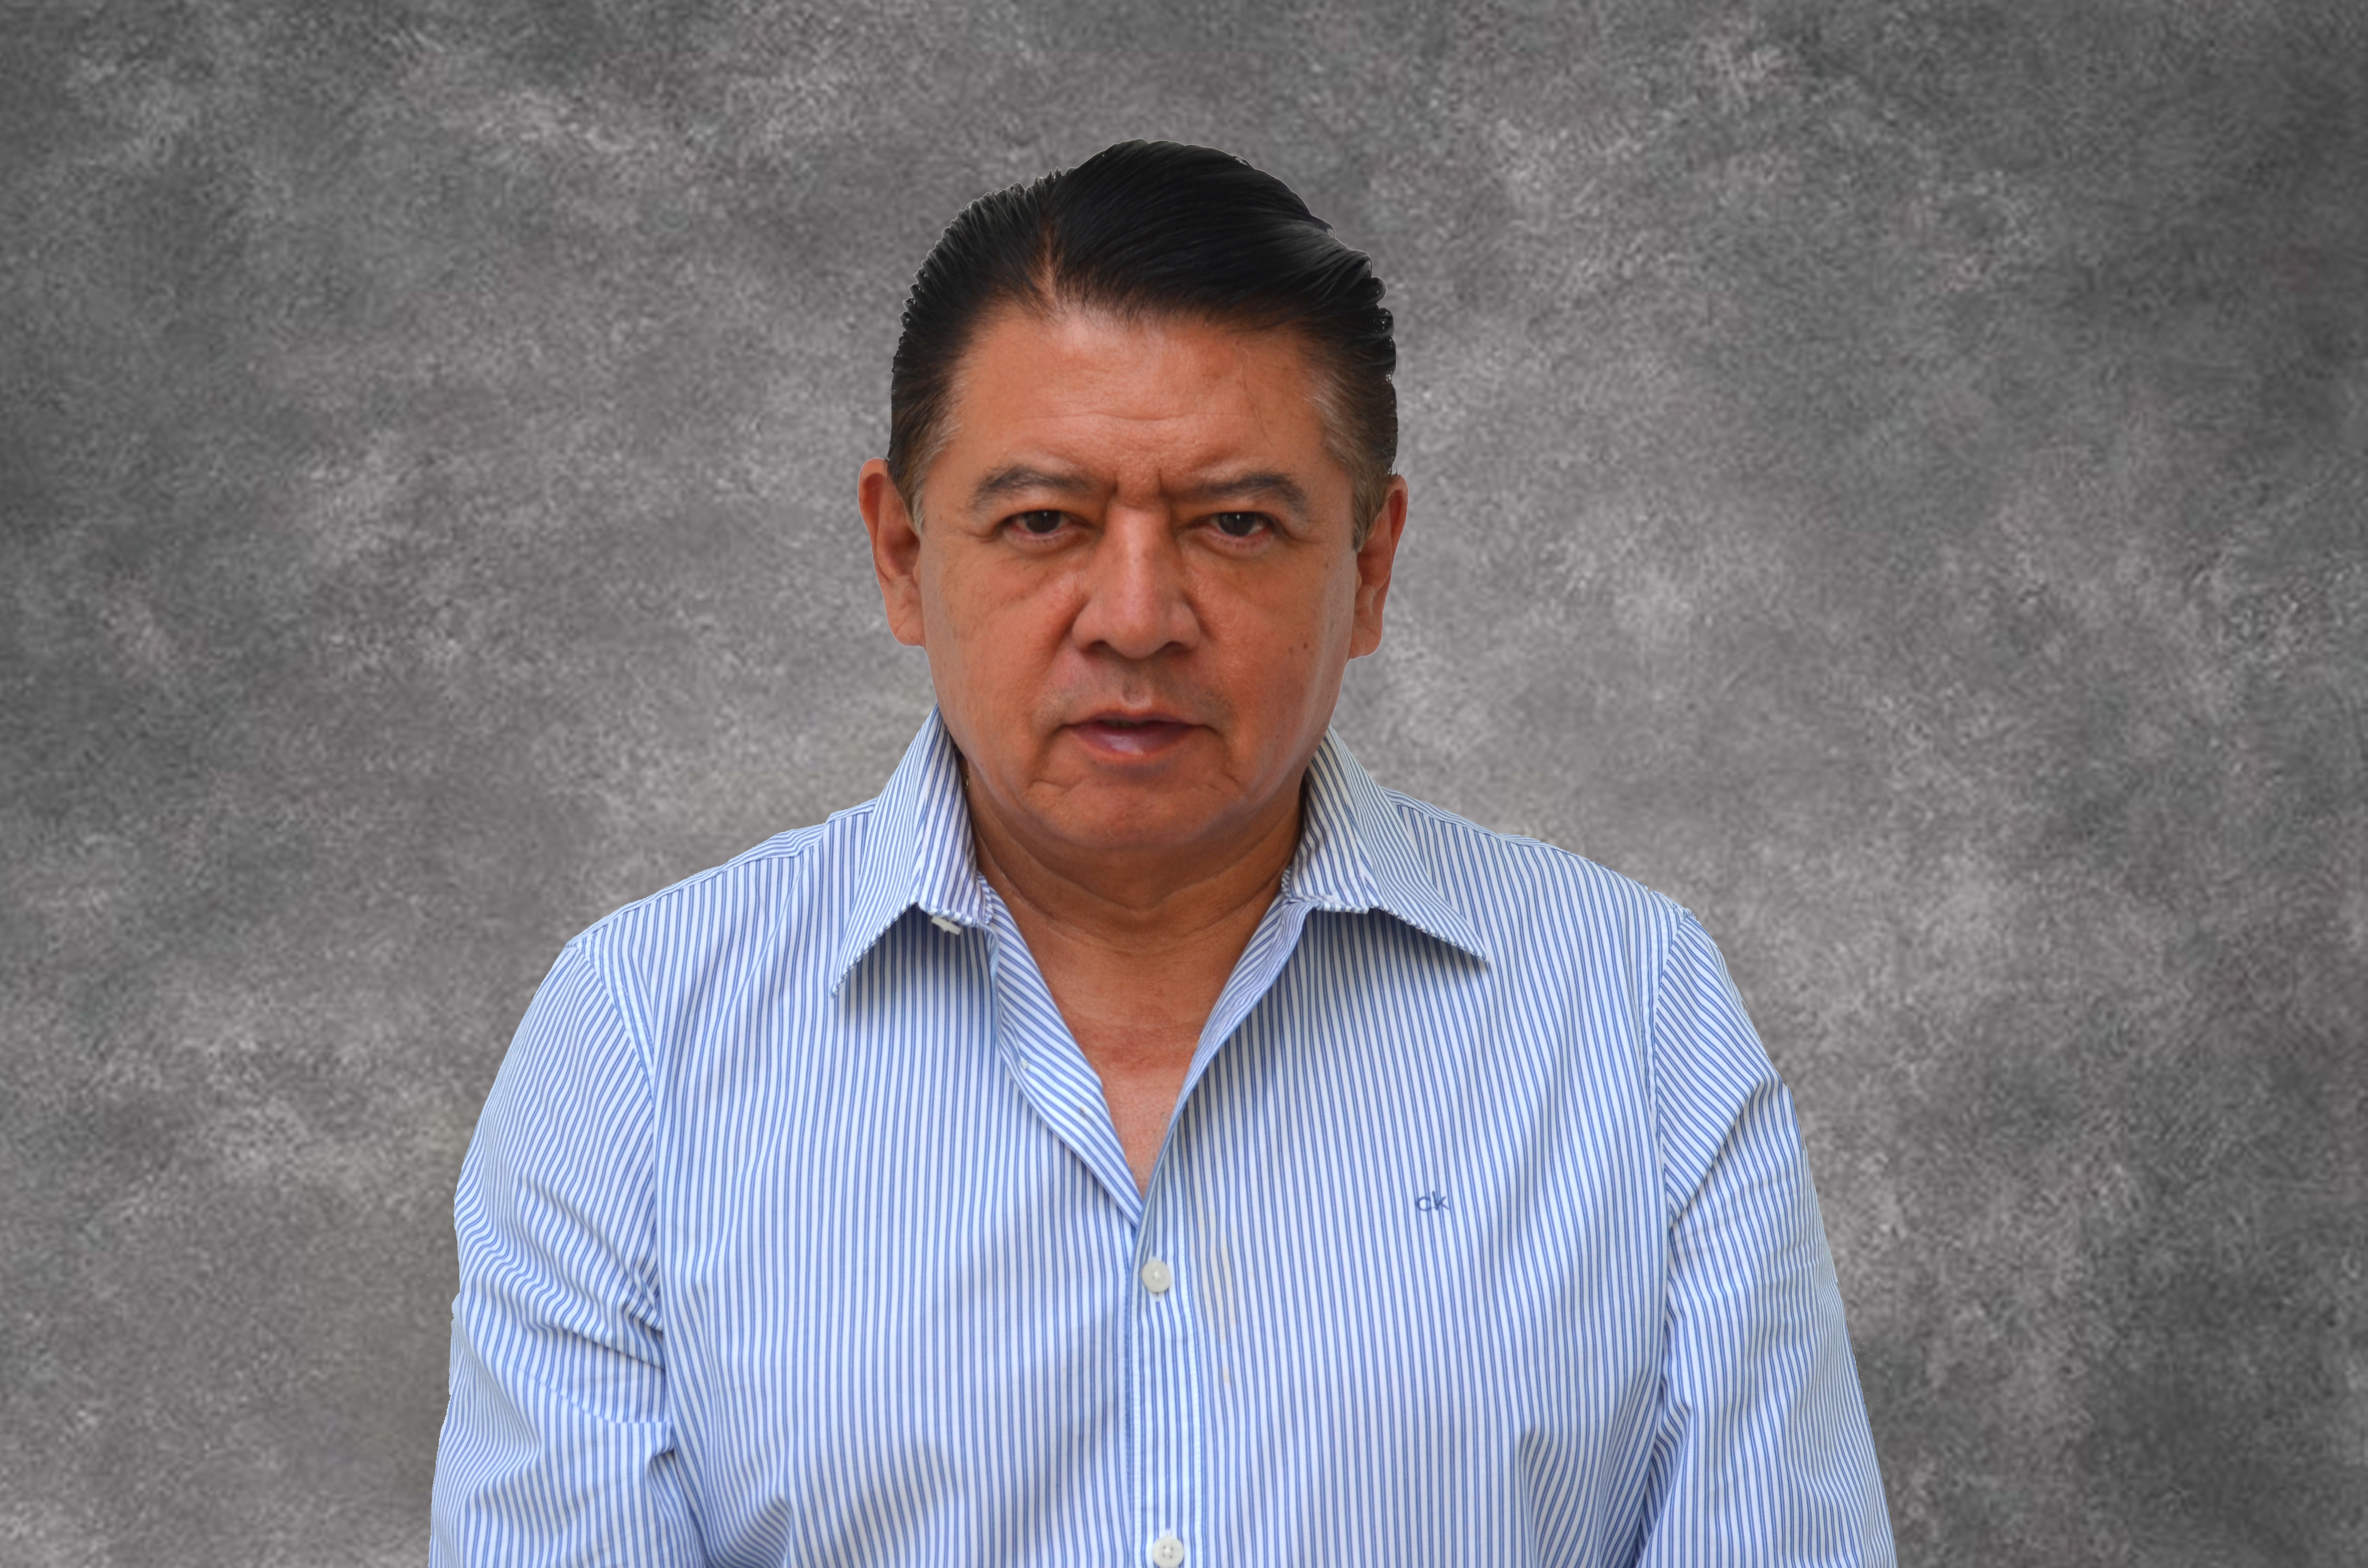 Dr. Francisco Javier Medellín Rodríguez